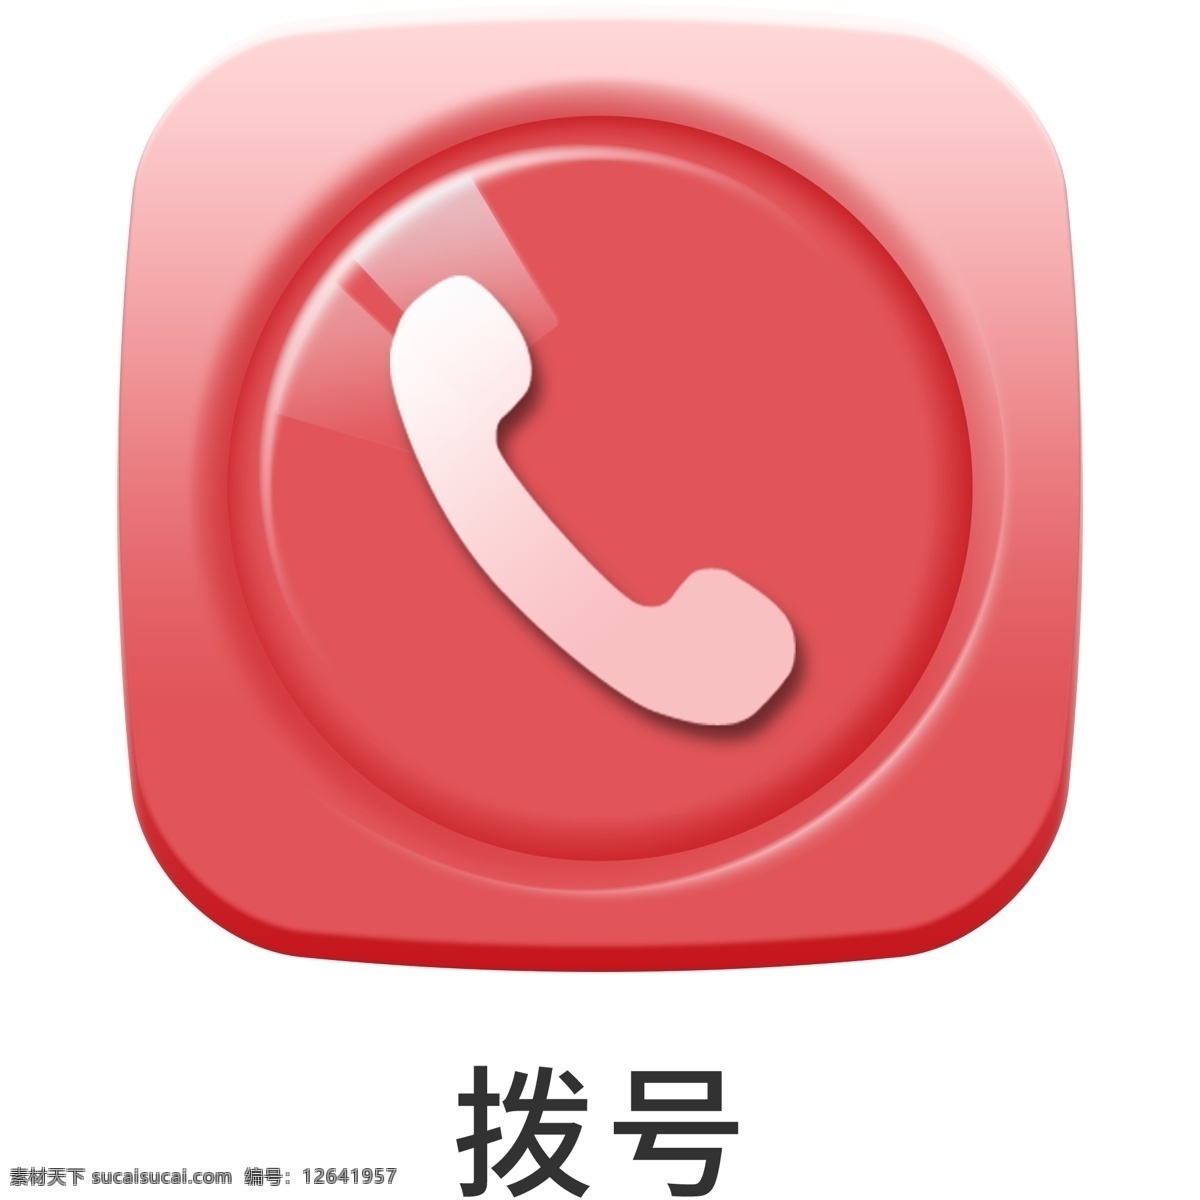 手机 主题 多彩 浮雕 拨号 icon 元素 ui图标 彩色 图标 设计元素 手机主题 图标按钮